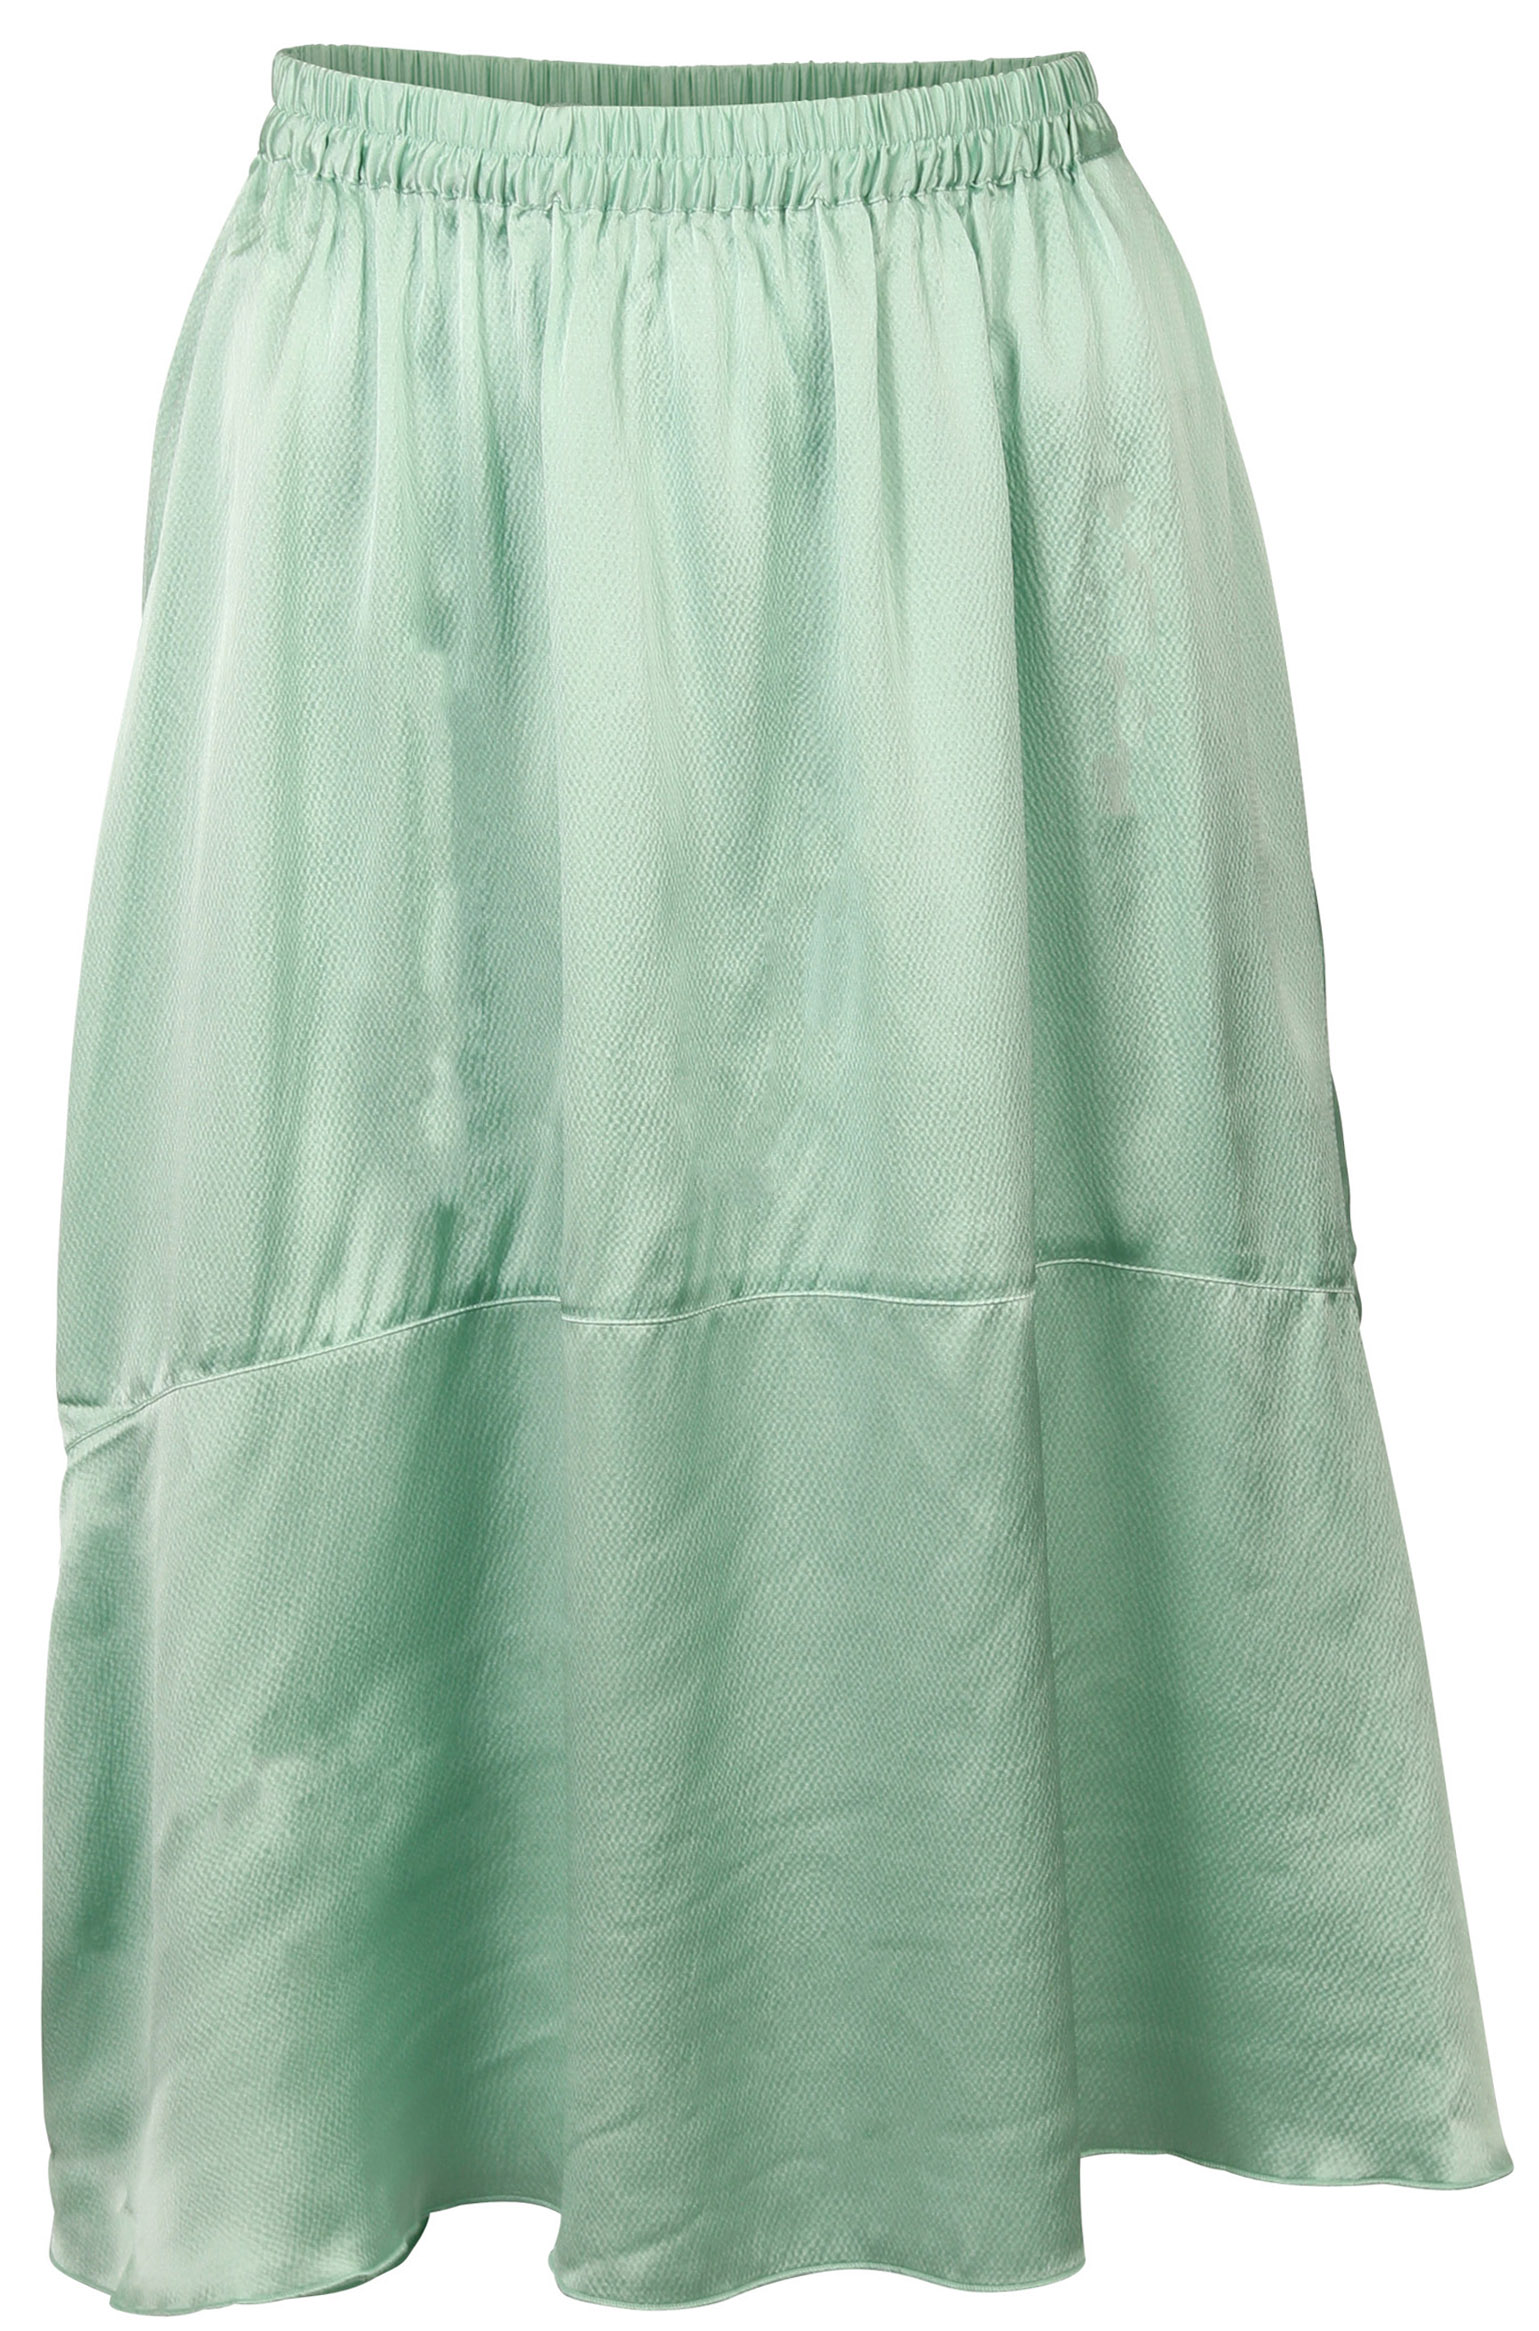 FWSS Skirt Lisbet Jade Green S